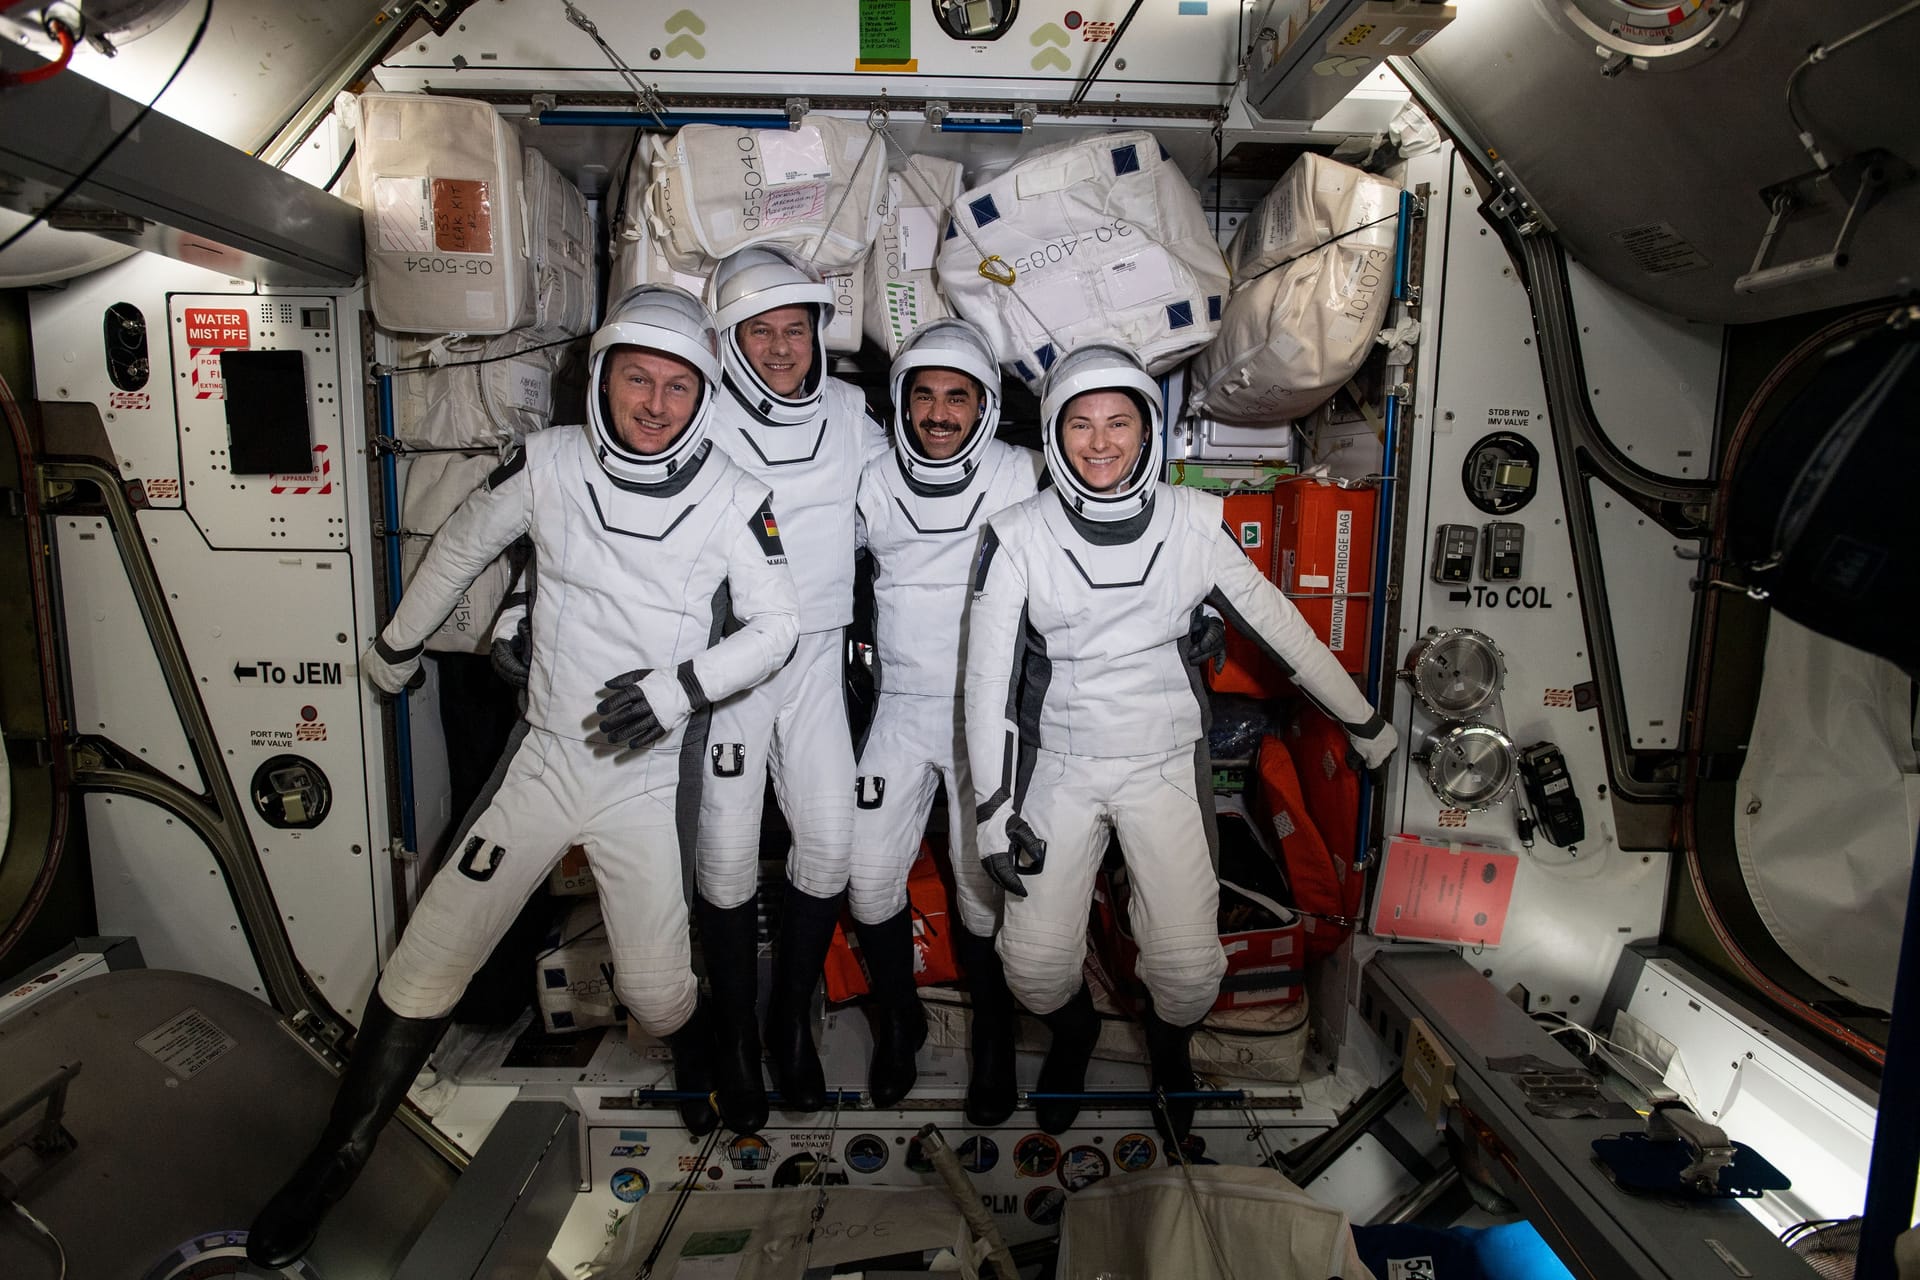 Die Astronauten der "Crew 3"-Mission machen ein Foto an Bord der ISS. Matthias Maurer ist links im Bild zu sehen. Rechts neben ihm befinden sich die US-Raumfahrer Tom Marshburn, Raja Chari und Kayla Barron.